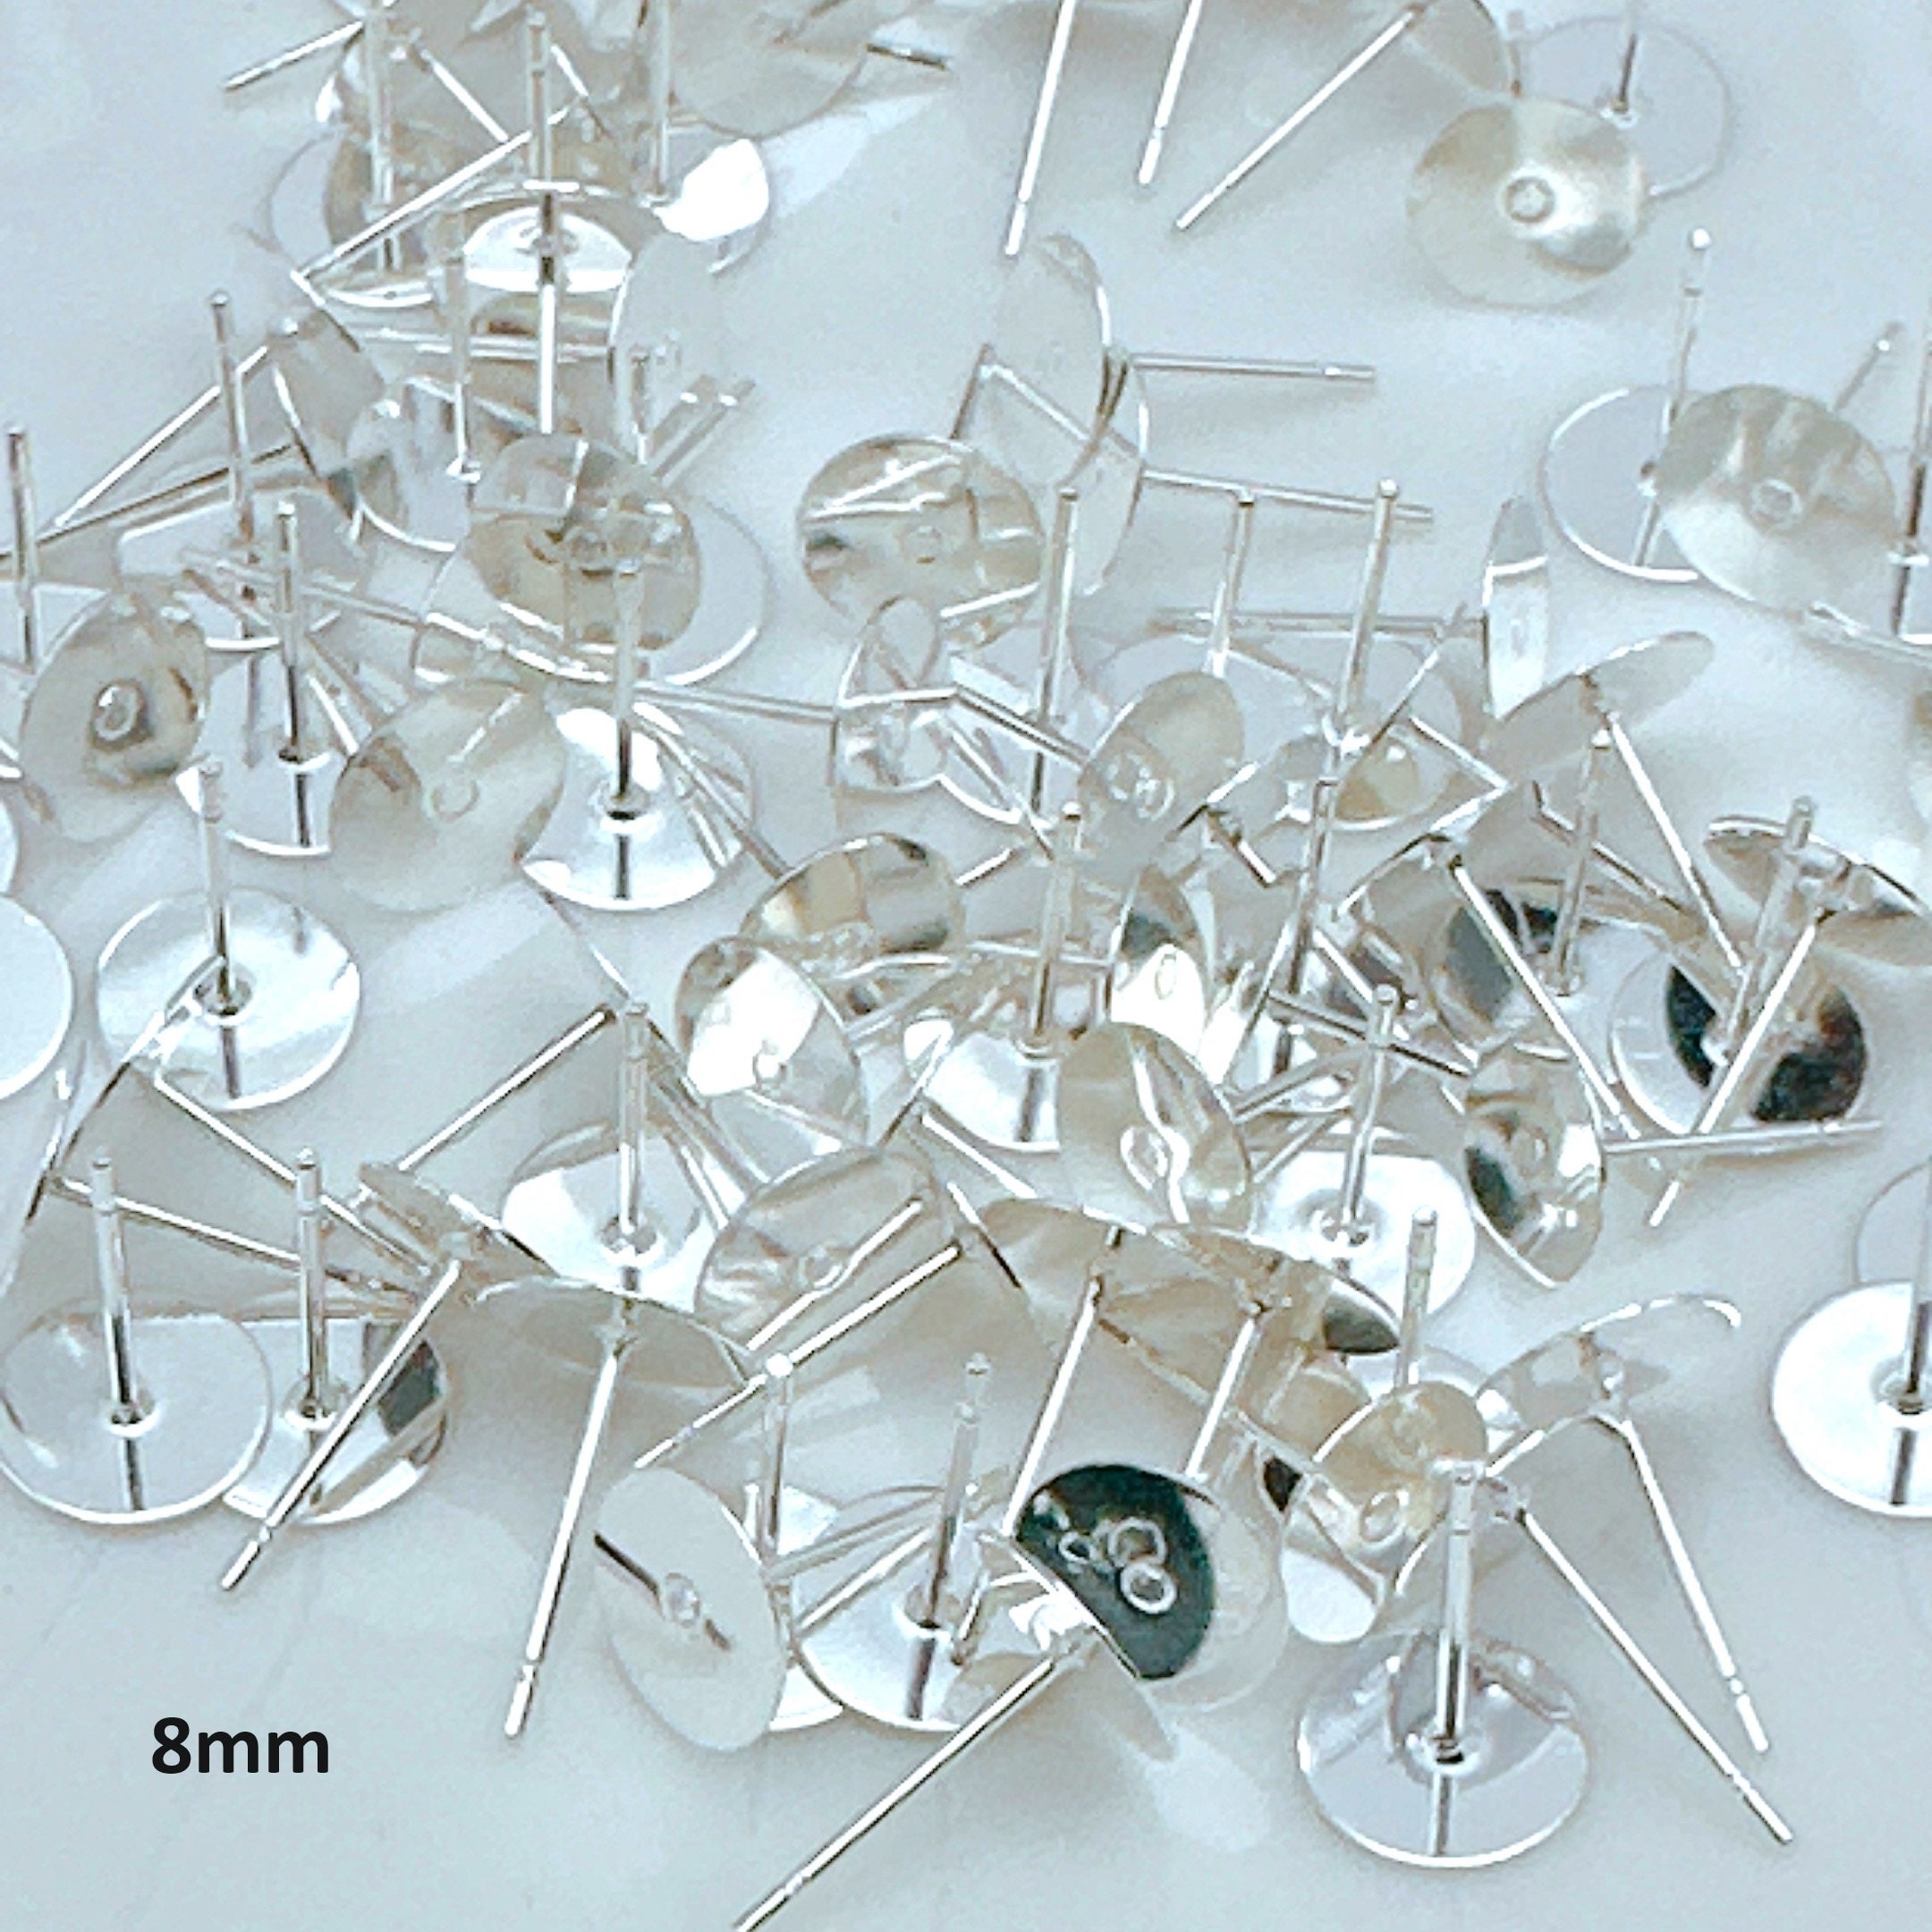 10 Nickel Free Stainless Steel or Niobium Eye Pins